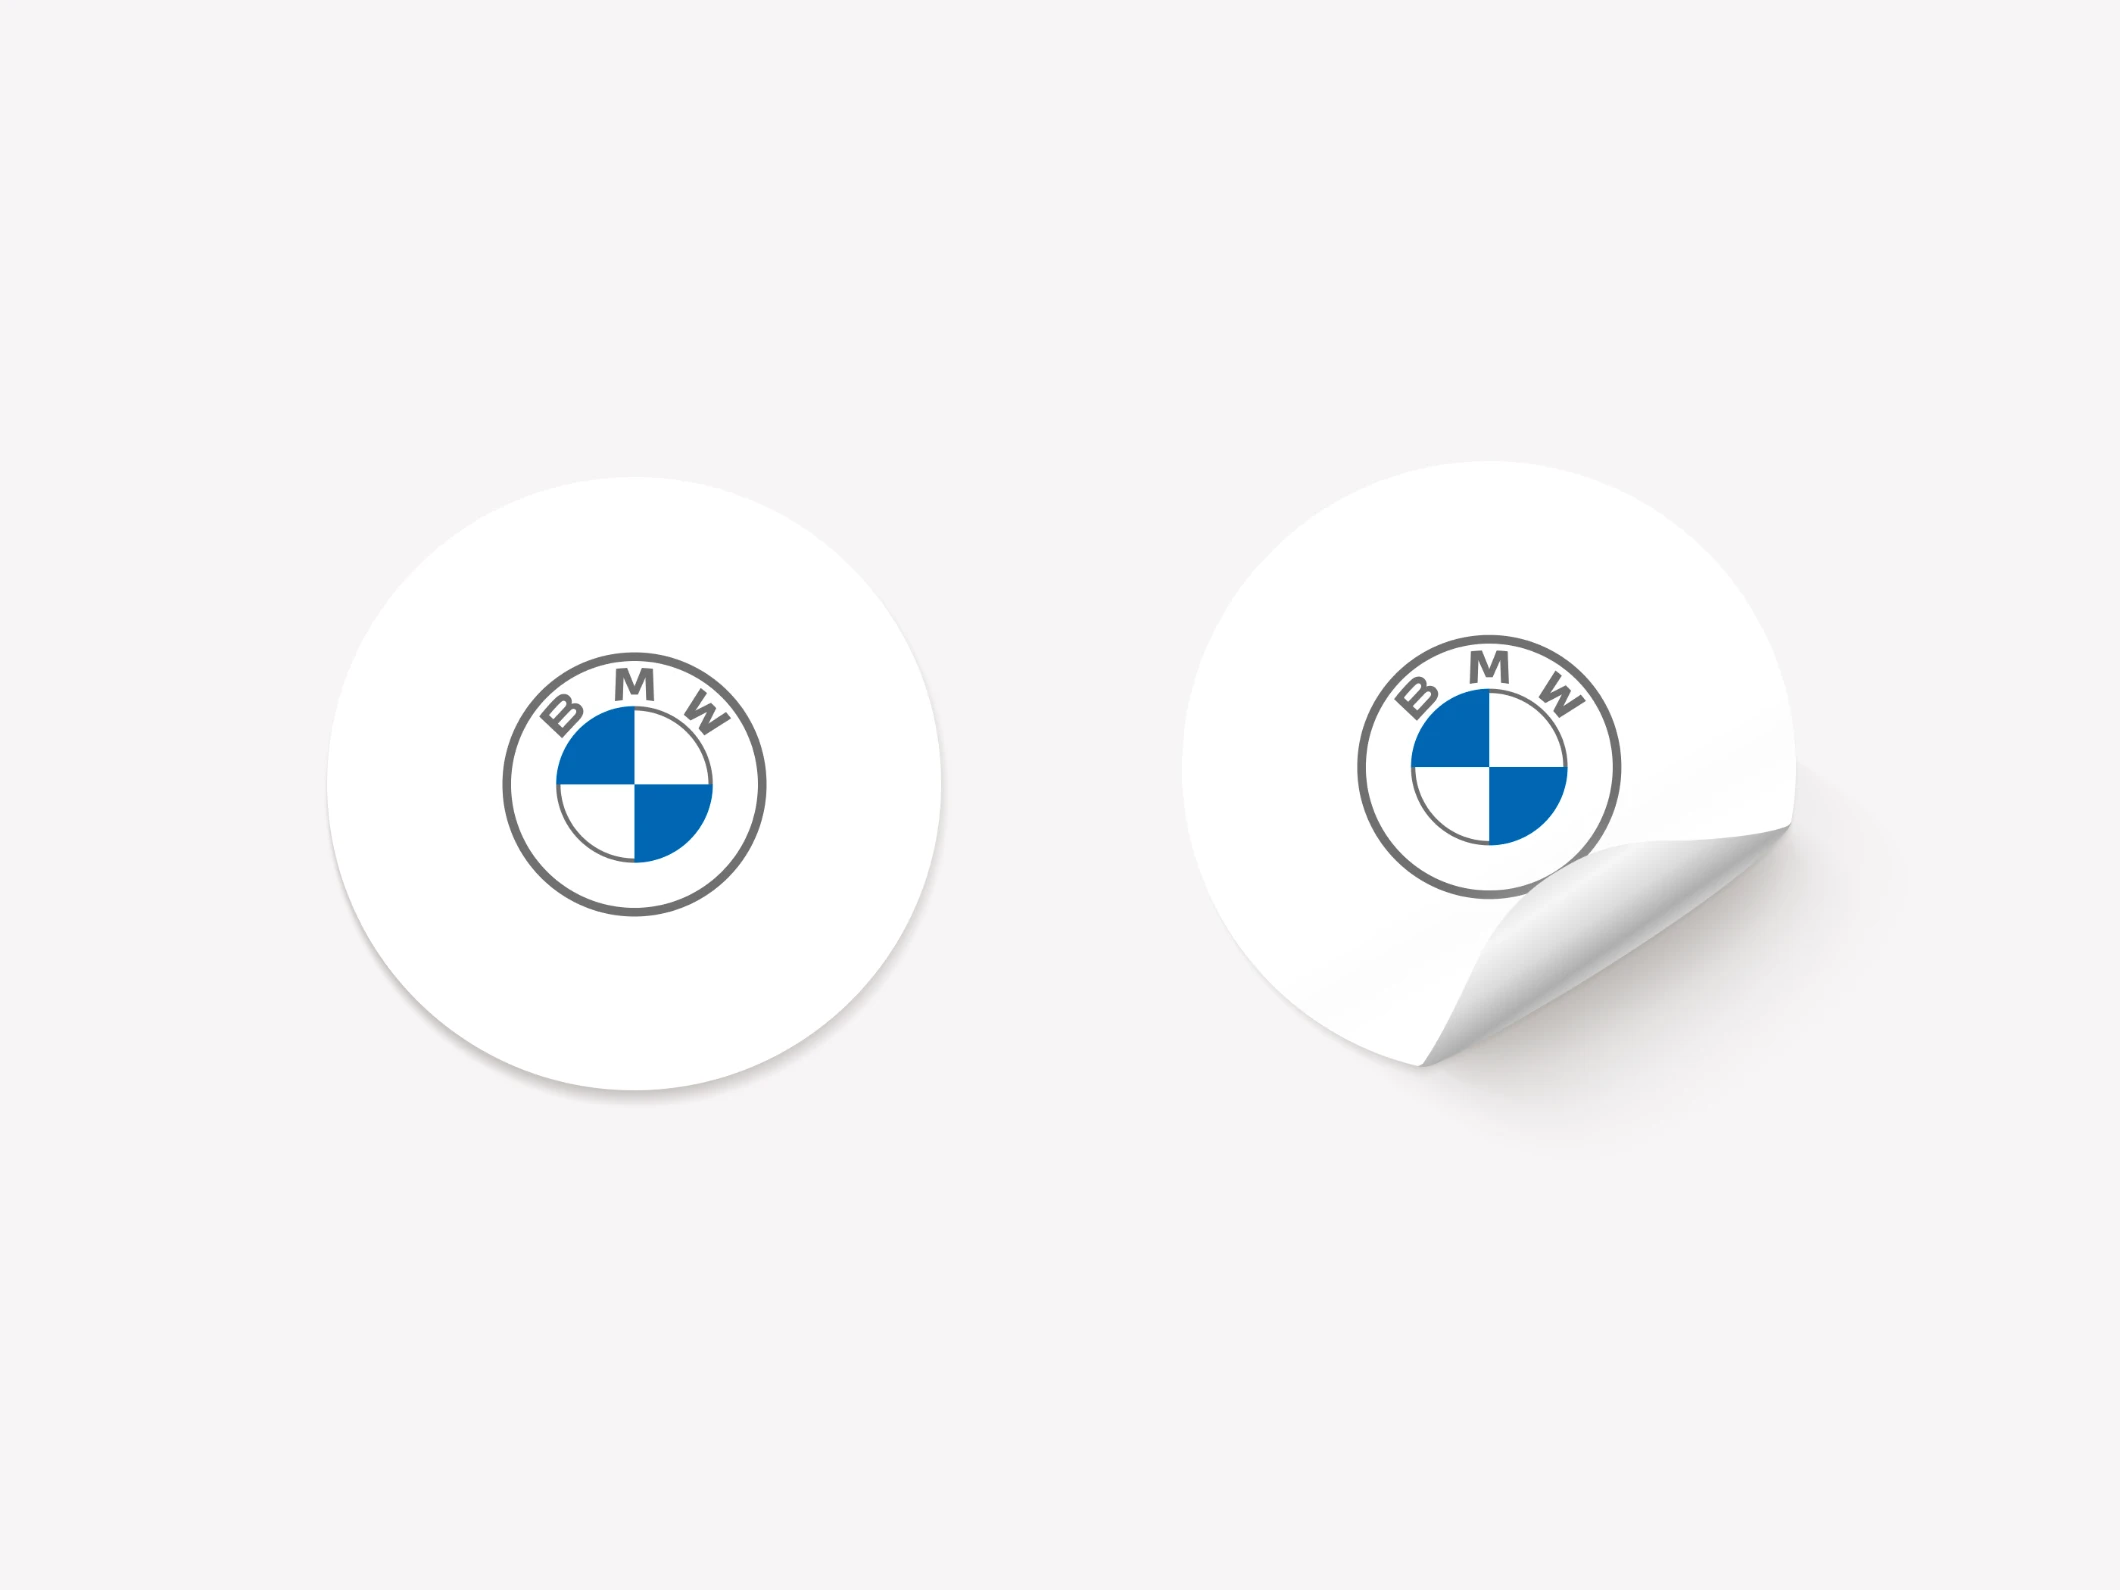 BMW Sticker